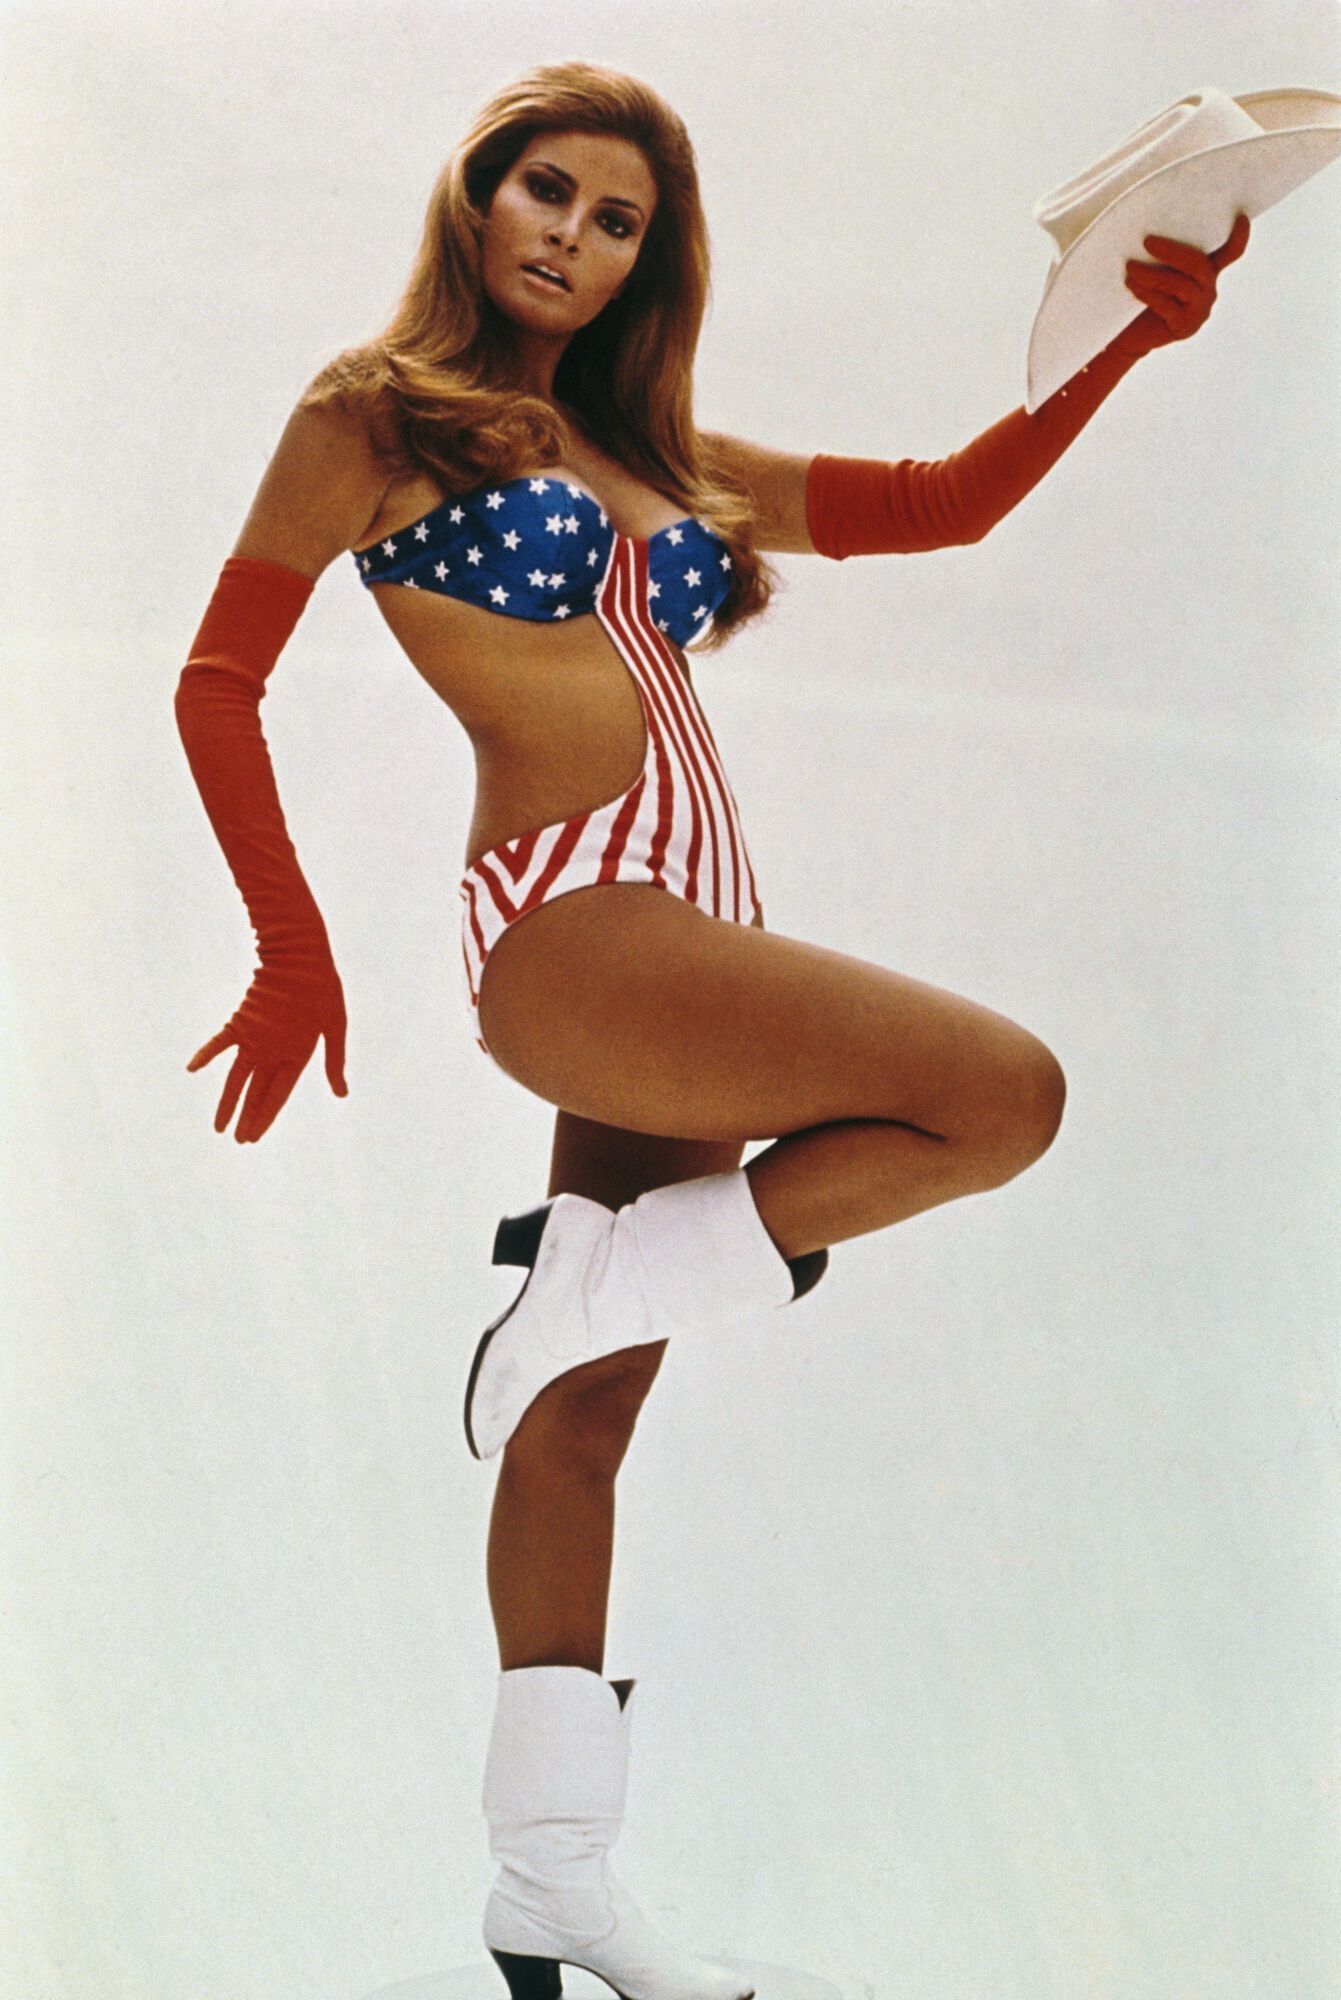 Померла секс-символ 70-х Ракель Велч. Найгарячіші фото зірки Playboy